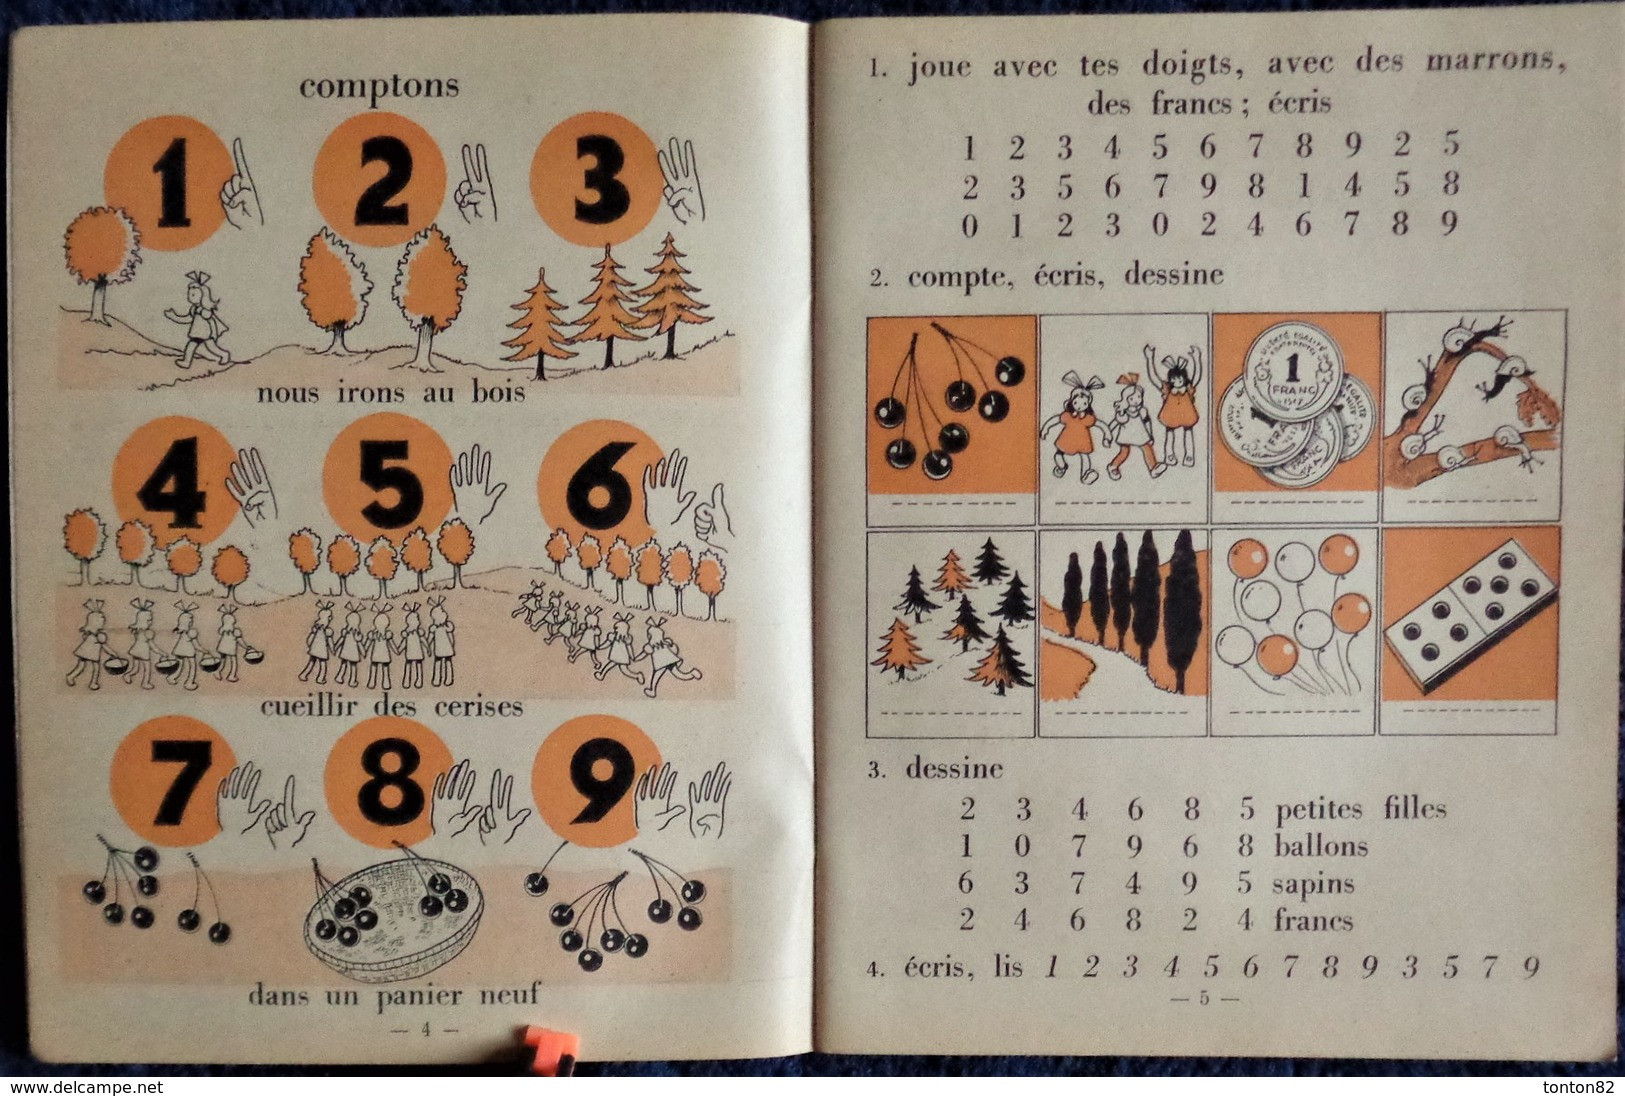 U. Coux - M.M. Deyres - Pour Compter Comme Les Grands - 1er Livre De Calcul - Charles-Lavauzelle & Cie, éditeurs - 1950 - 0-6 Ans